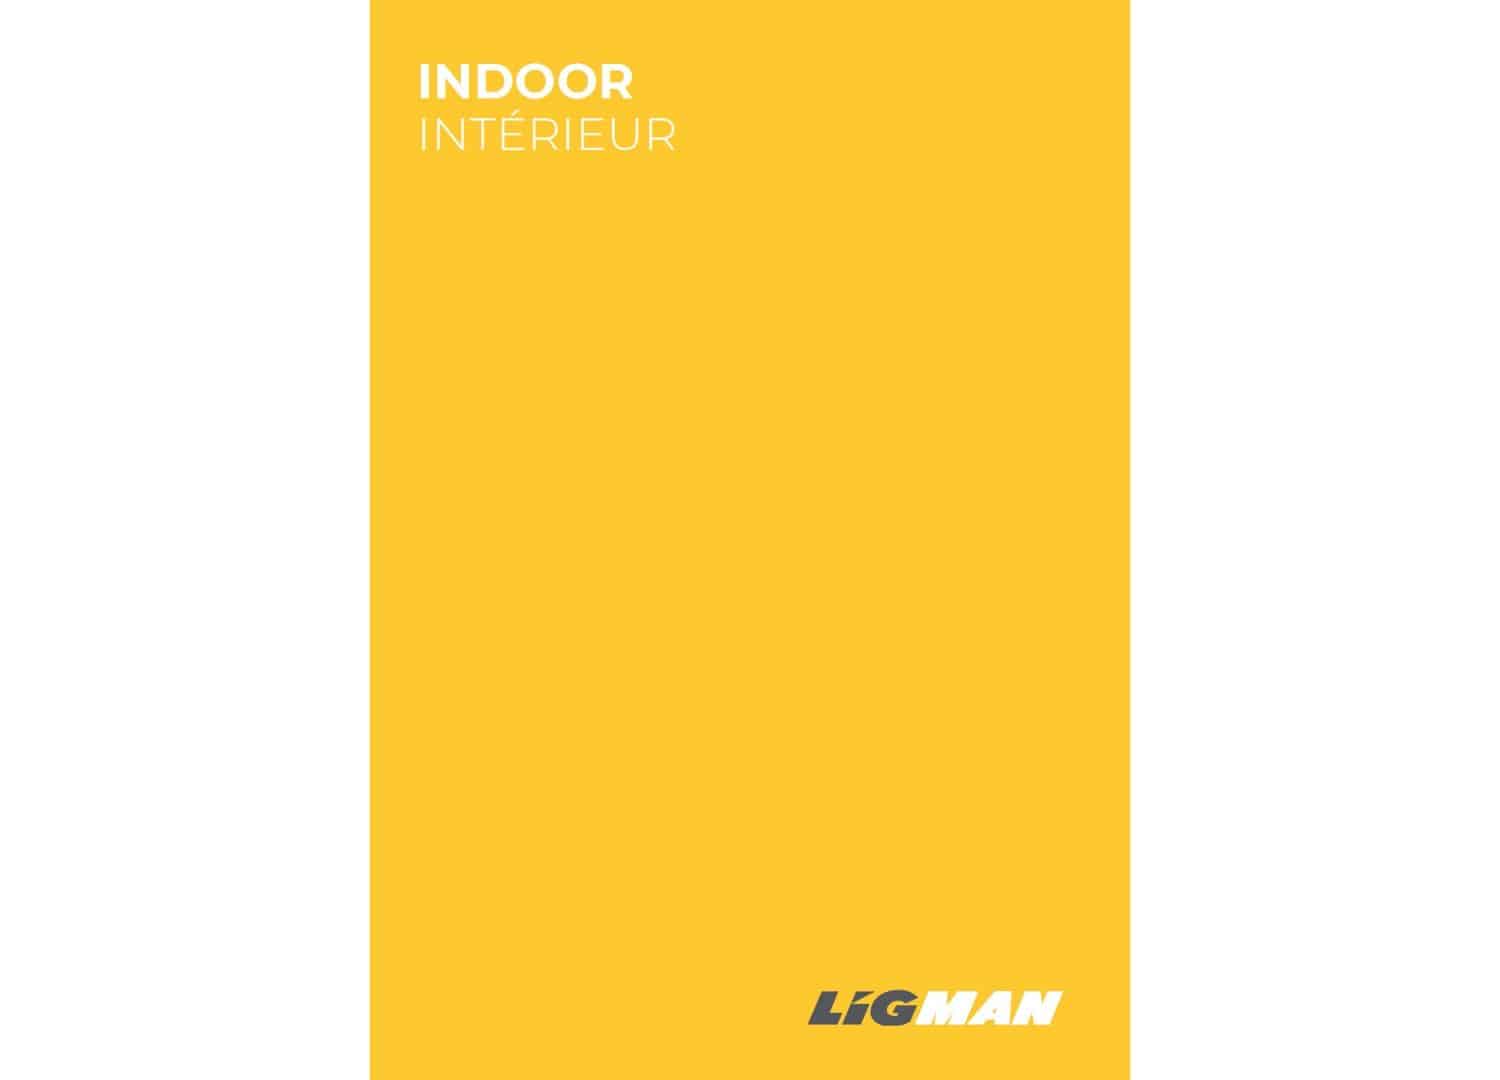 New 2020 Indoor Lighting Catalogue